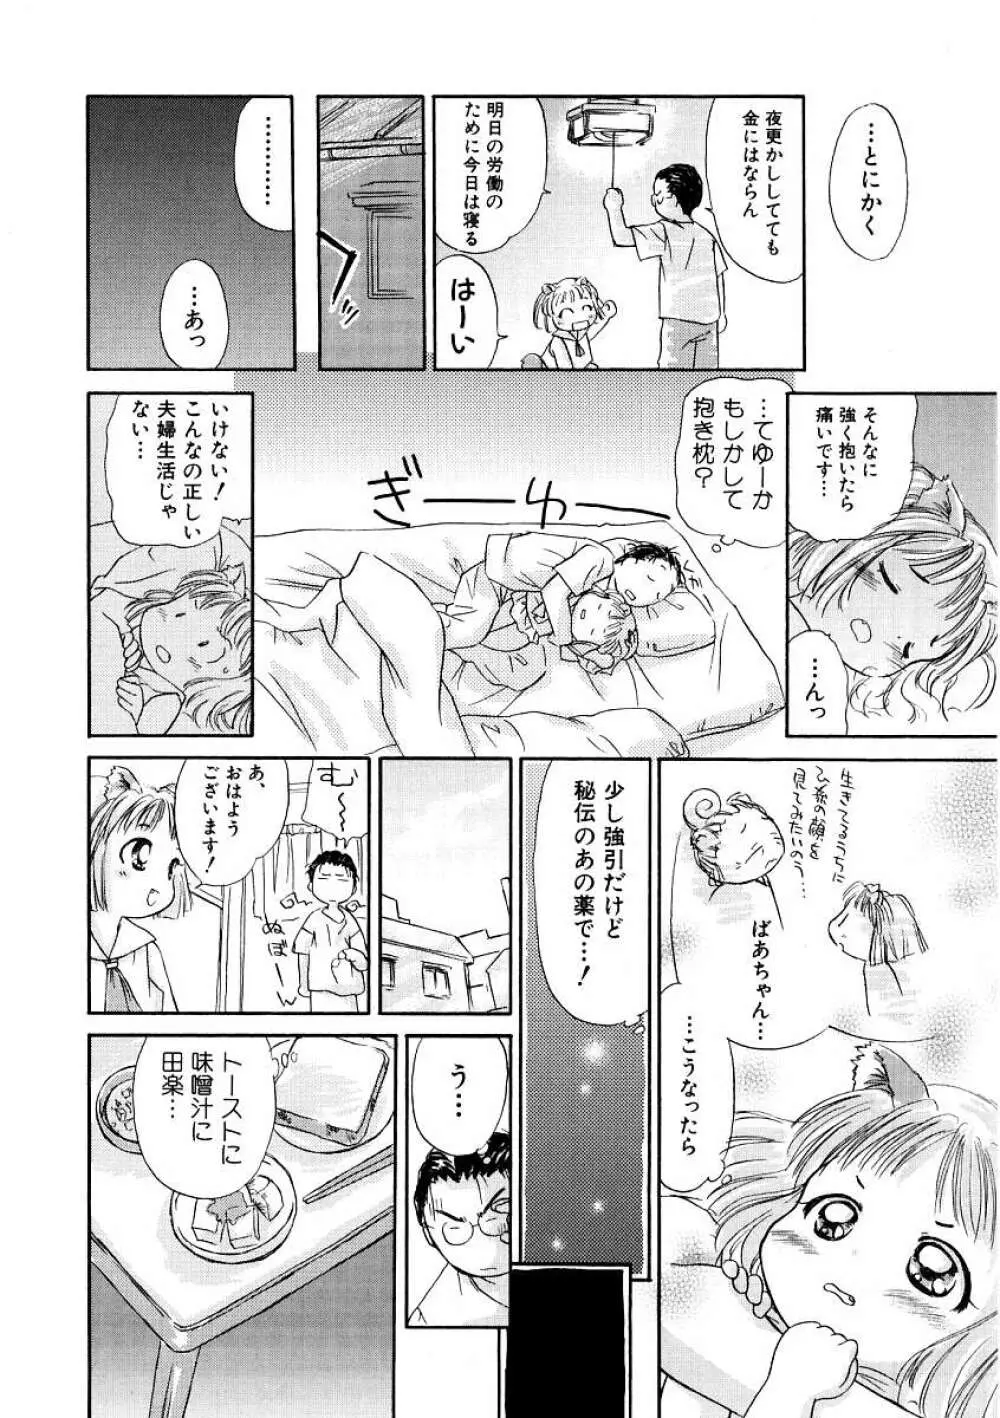 Hin-nyu v09 – Hin-nyu Keikaku 14ページ